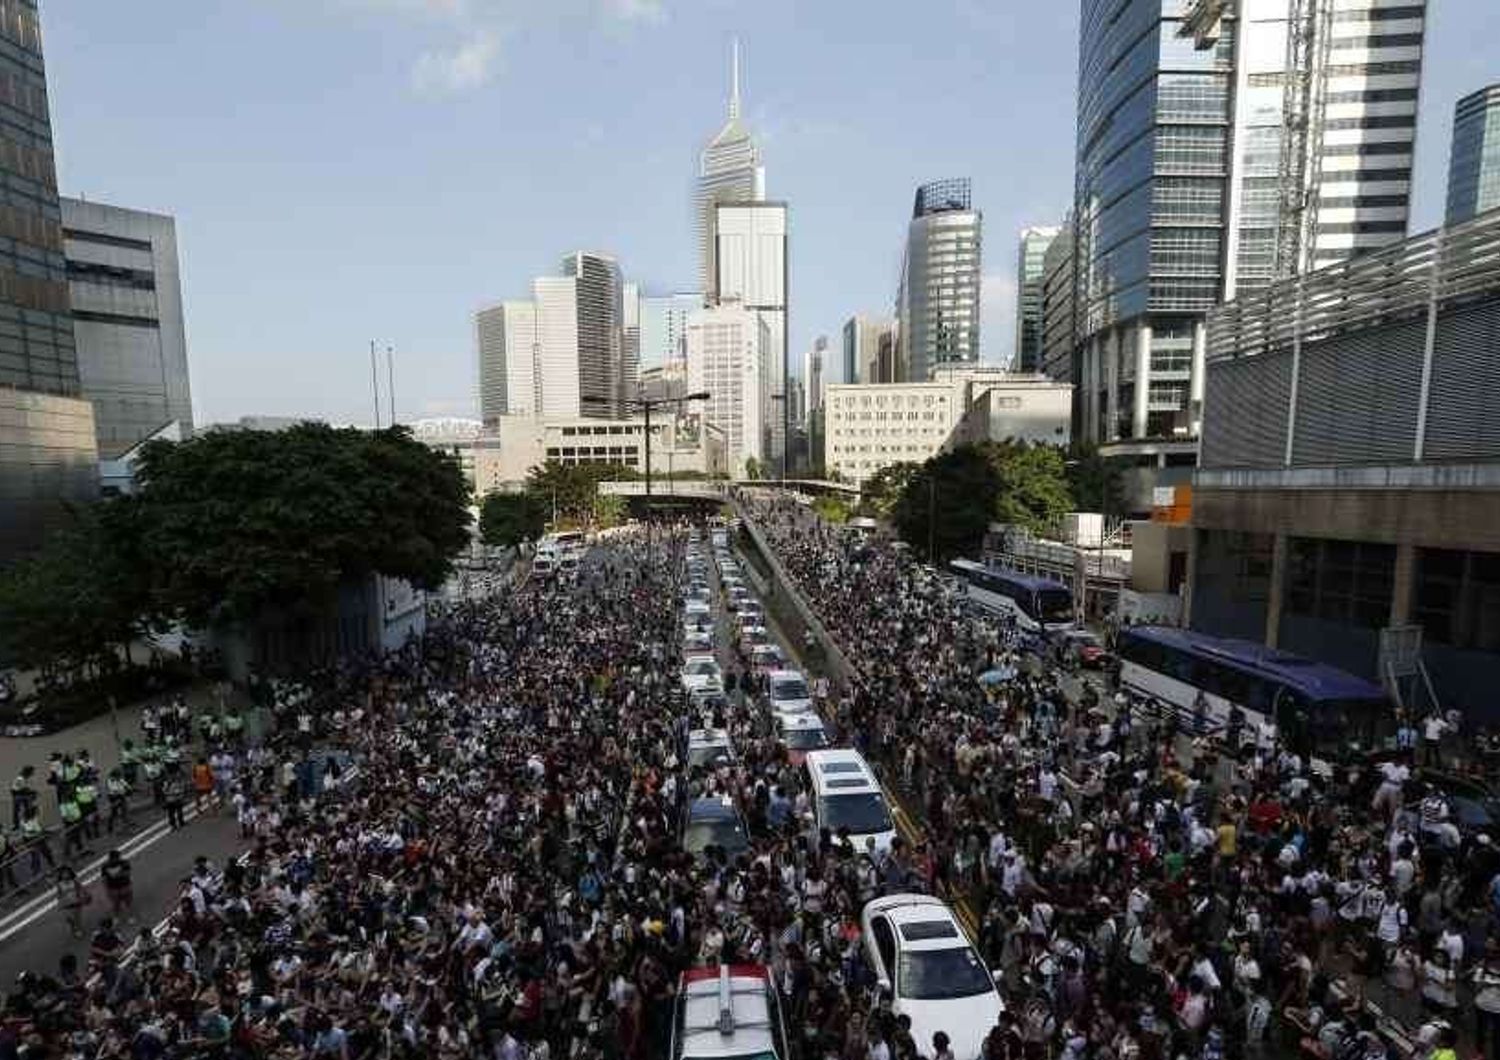 Dilaga la protesta anti-Pechino a Hong Kong: migliaia di manifestanti per le strade - Foto - Video